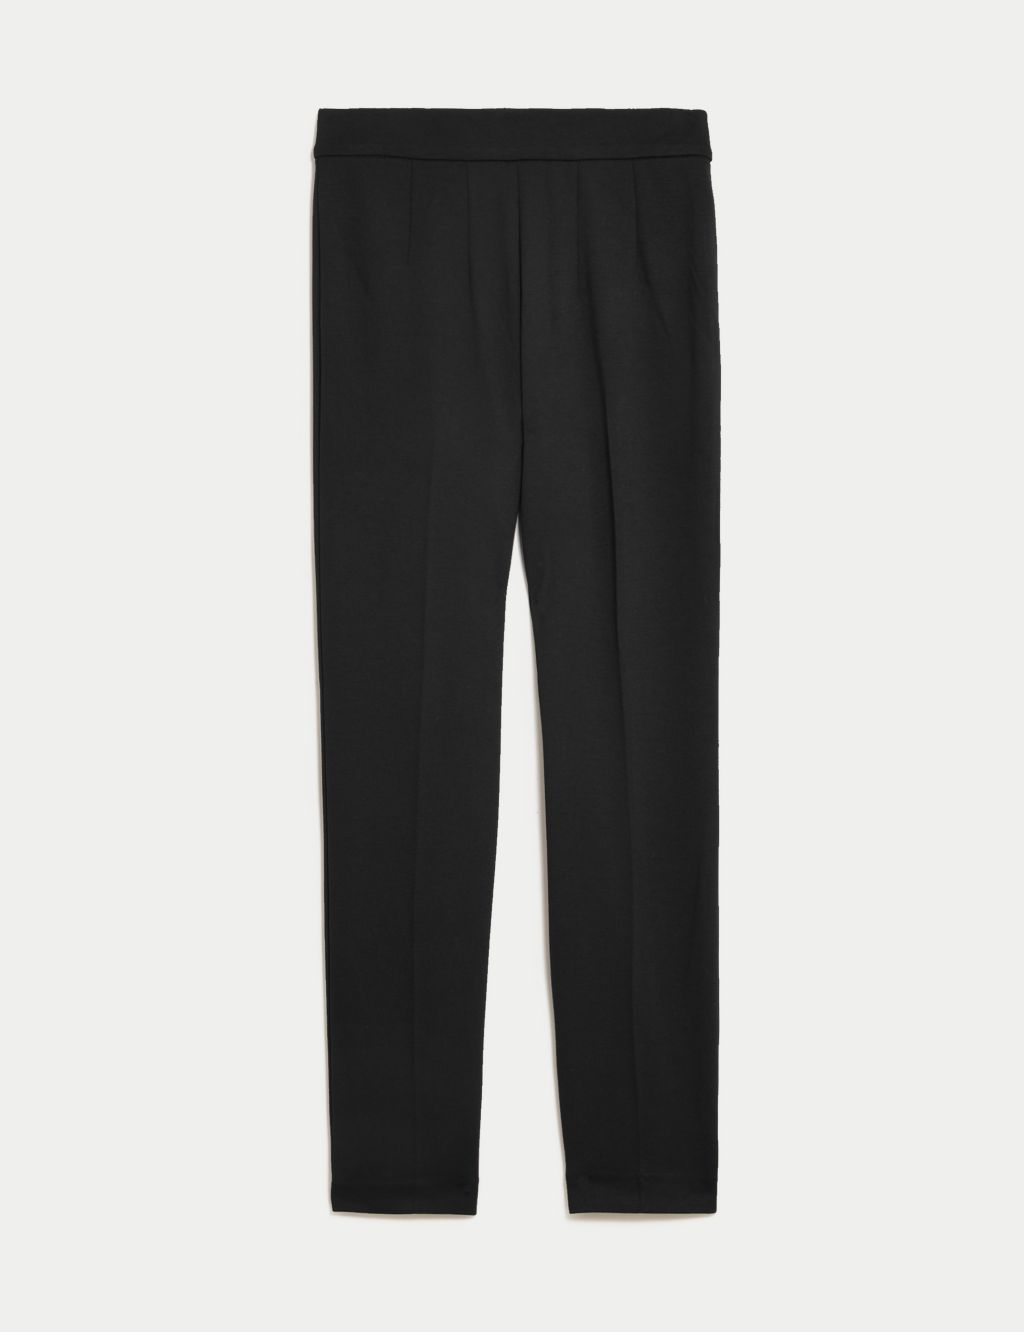 Sosandar Womens Tuxedo Tapered Trousers - 8REG - Black, Black, £55.00